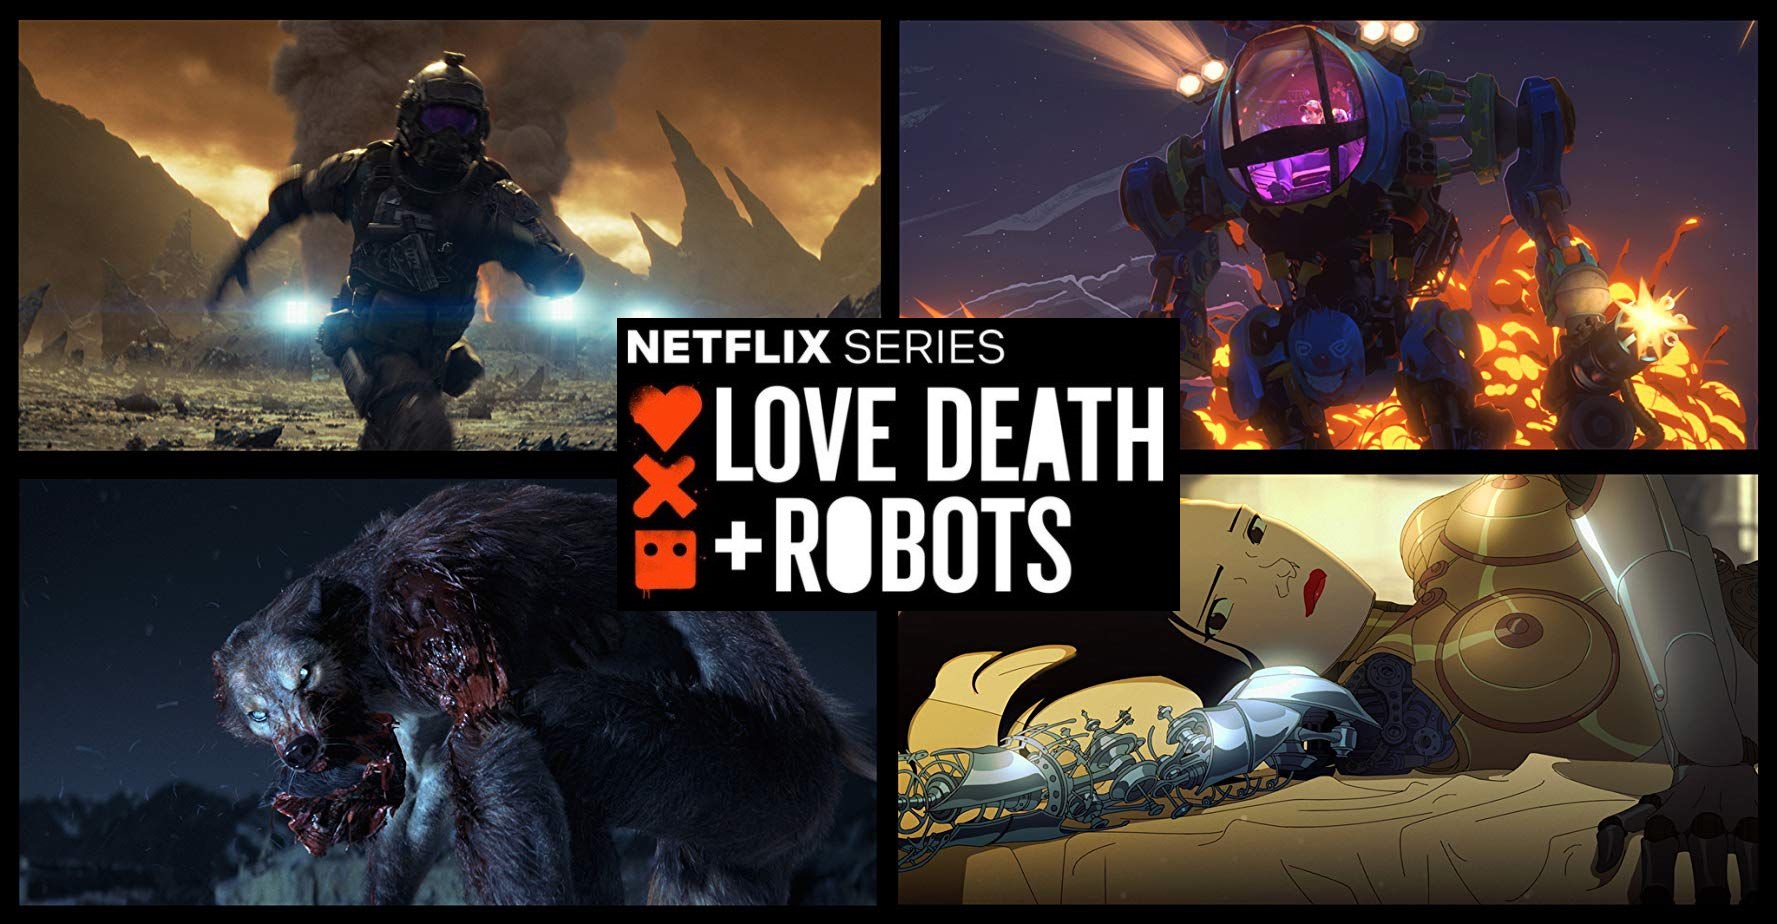 LOVE DEATH + ROBOTS | The reviews